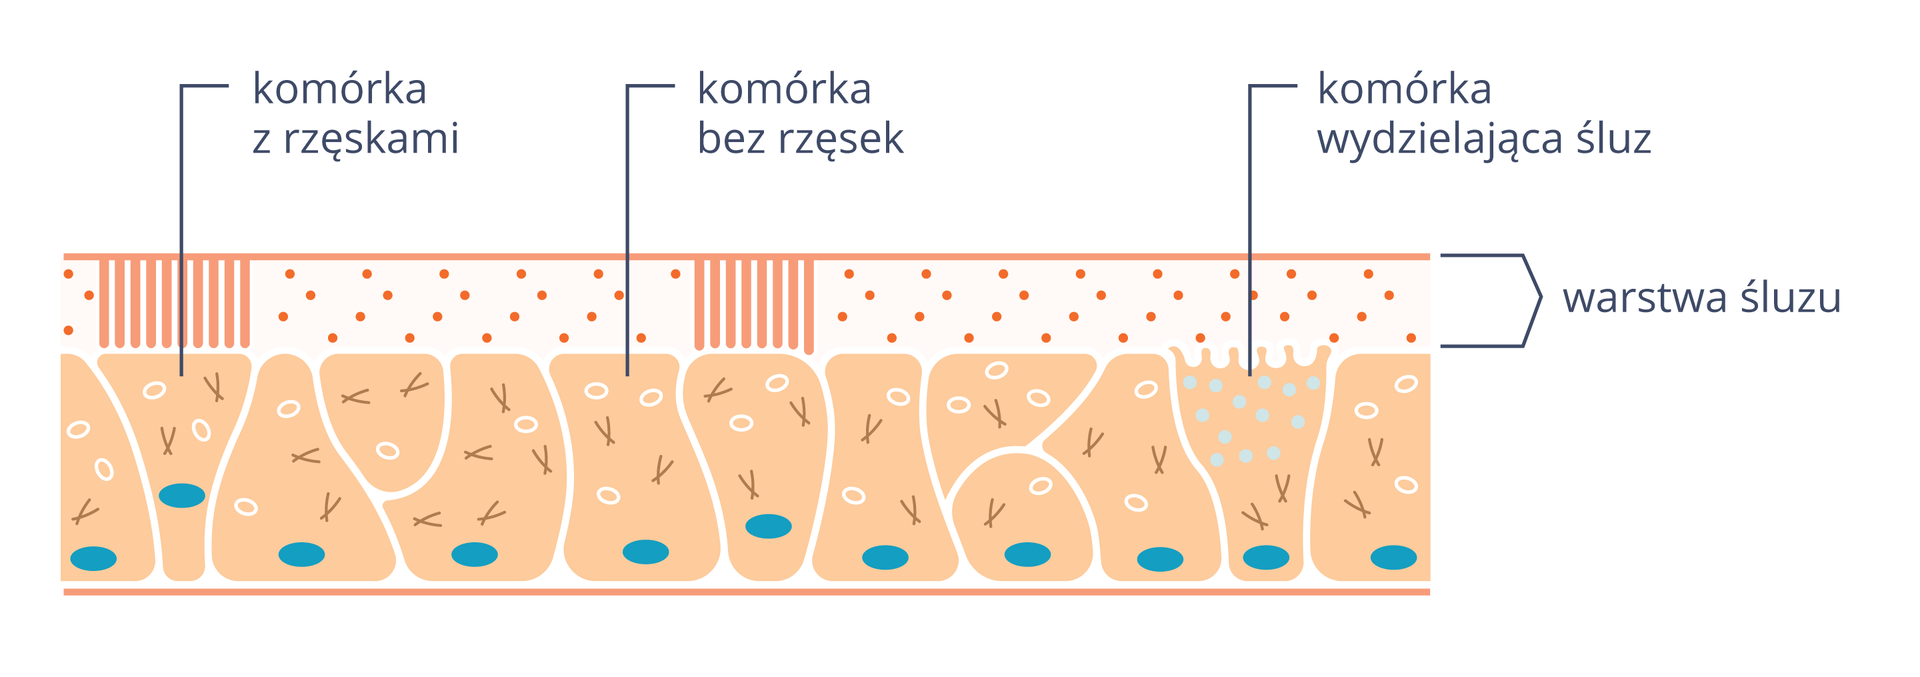 Ilustracja przedstawia nieregularne różowe komórki nabłonka oddechowego z niebieskimi jądrami. Na nich znajduje się kropkowana warstwa śluzu. Z prawej komórka z jaśniejszymi pęcherzykami, opisana jako komórka produkująca śluz. Niektóre komórki są bez pionowych rzęsek, inne mają rzęski.